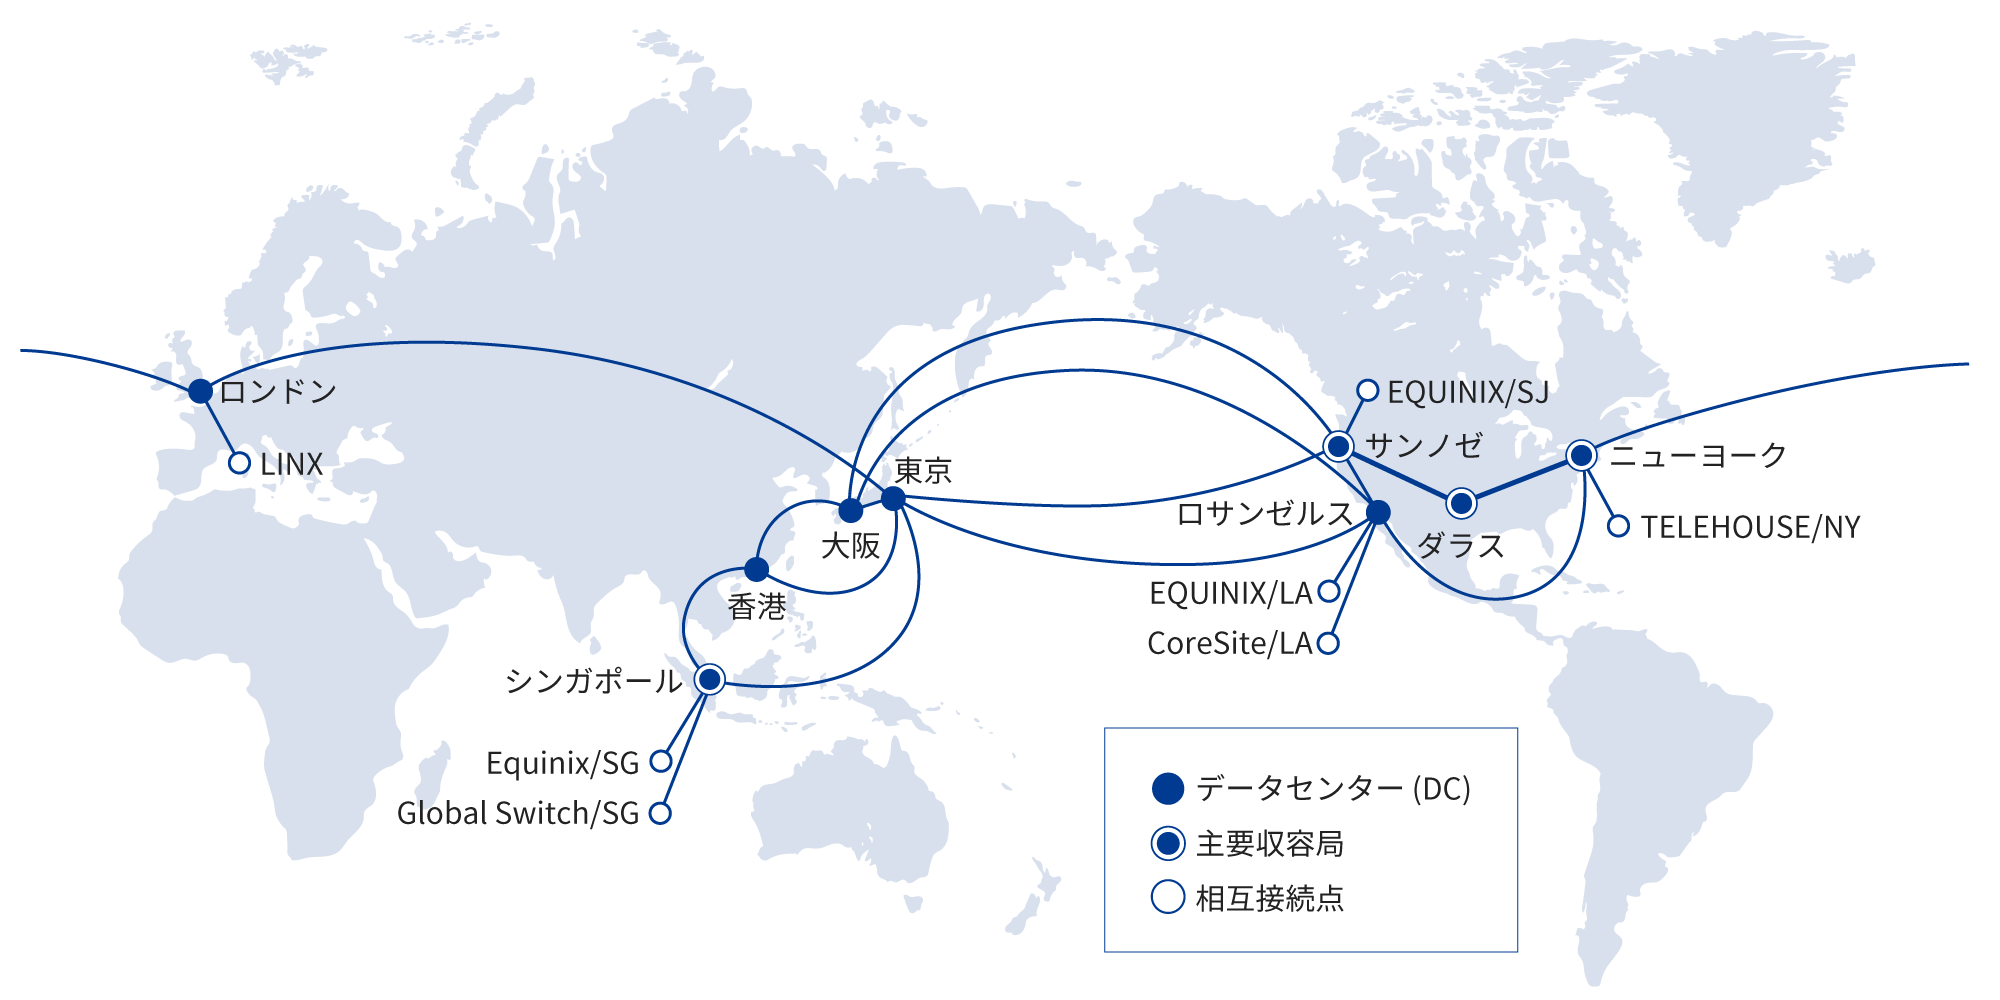 図: 海外ネットワークバックボーン図